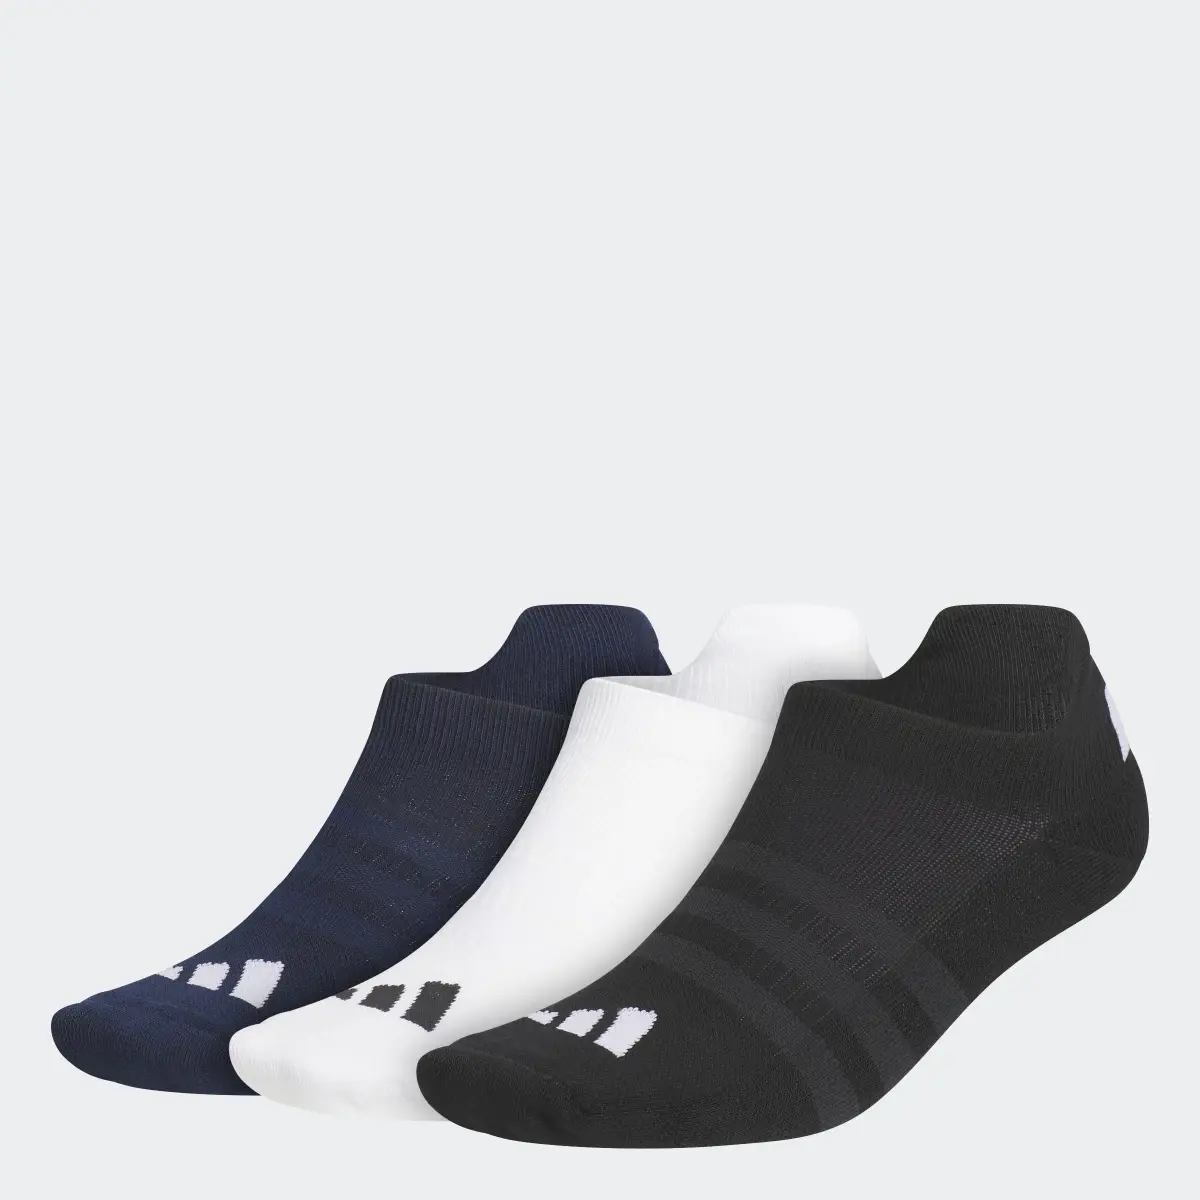 Adidas Golf Ankle Socks 3 Pairs. 1